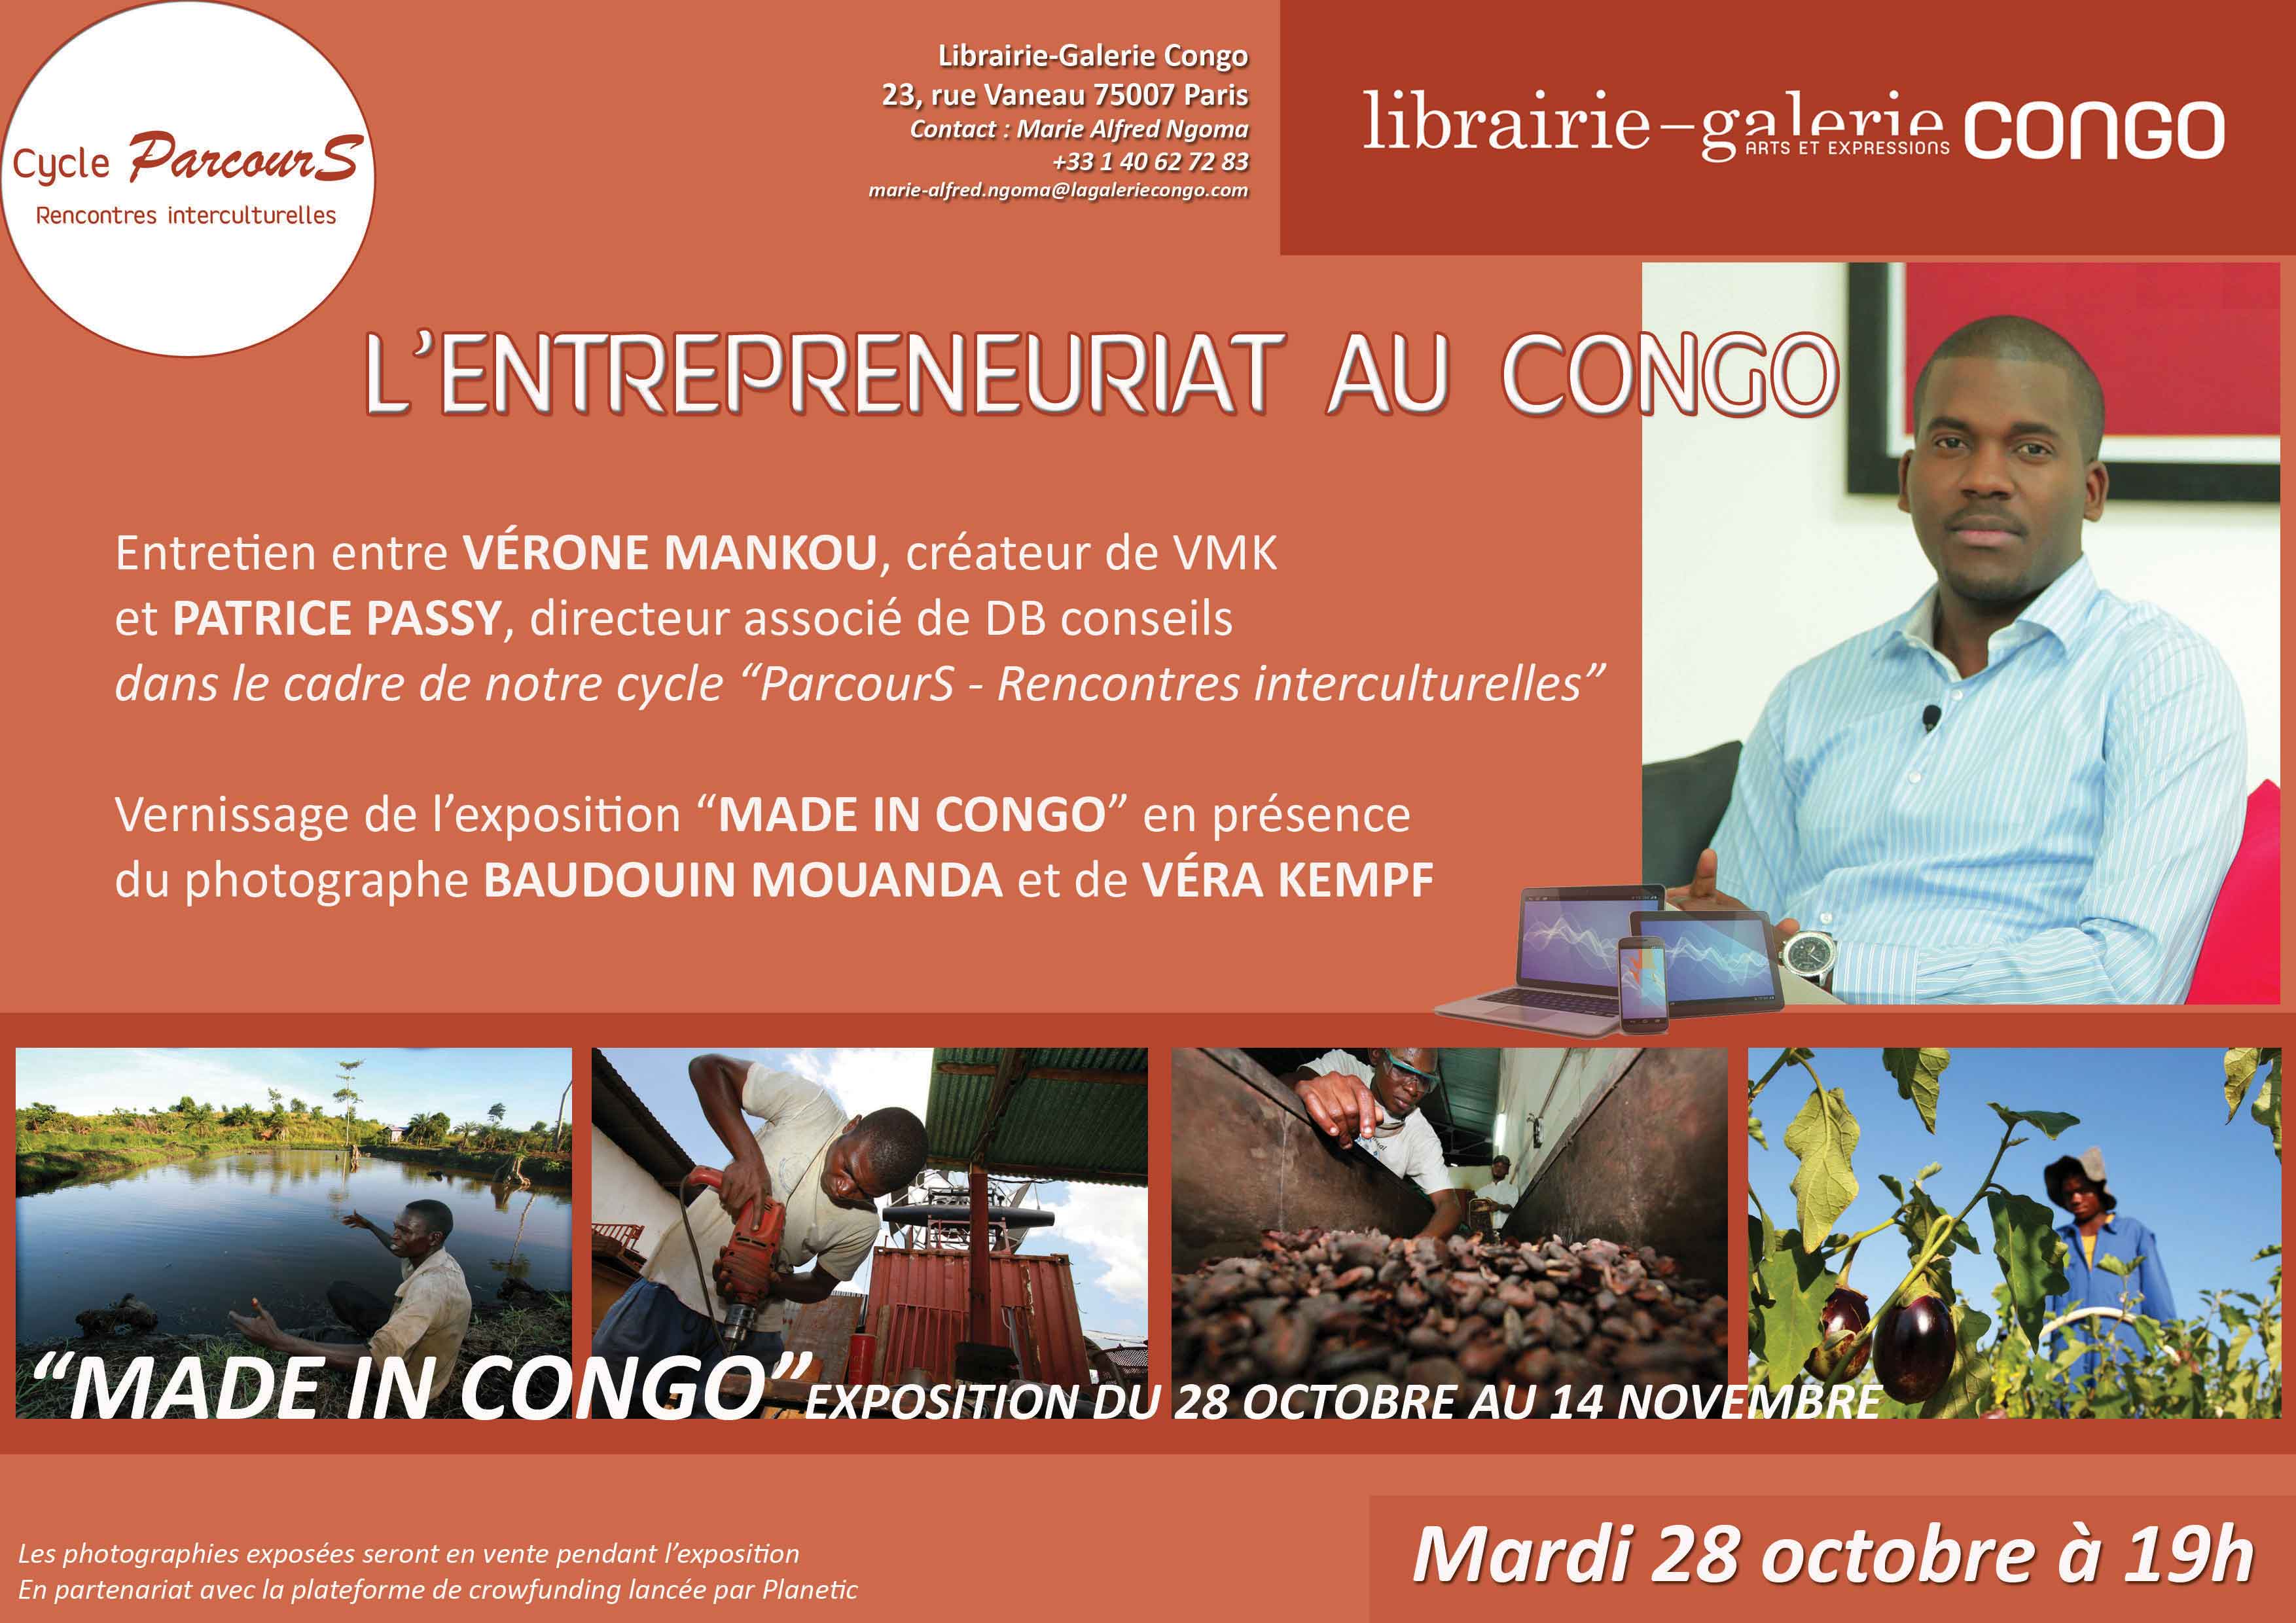 Entrepreneuriat au Congo